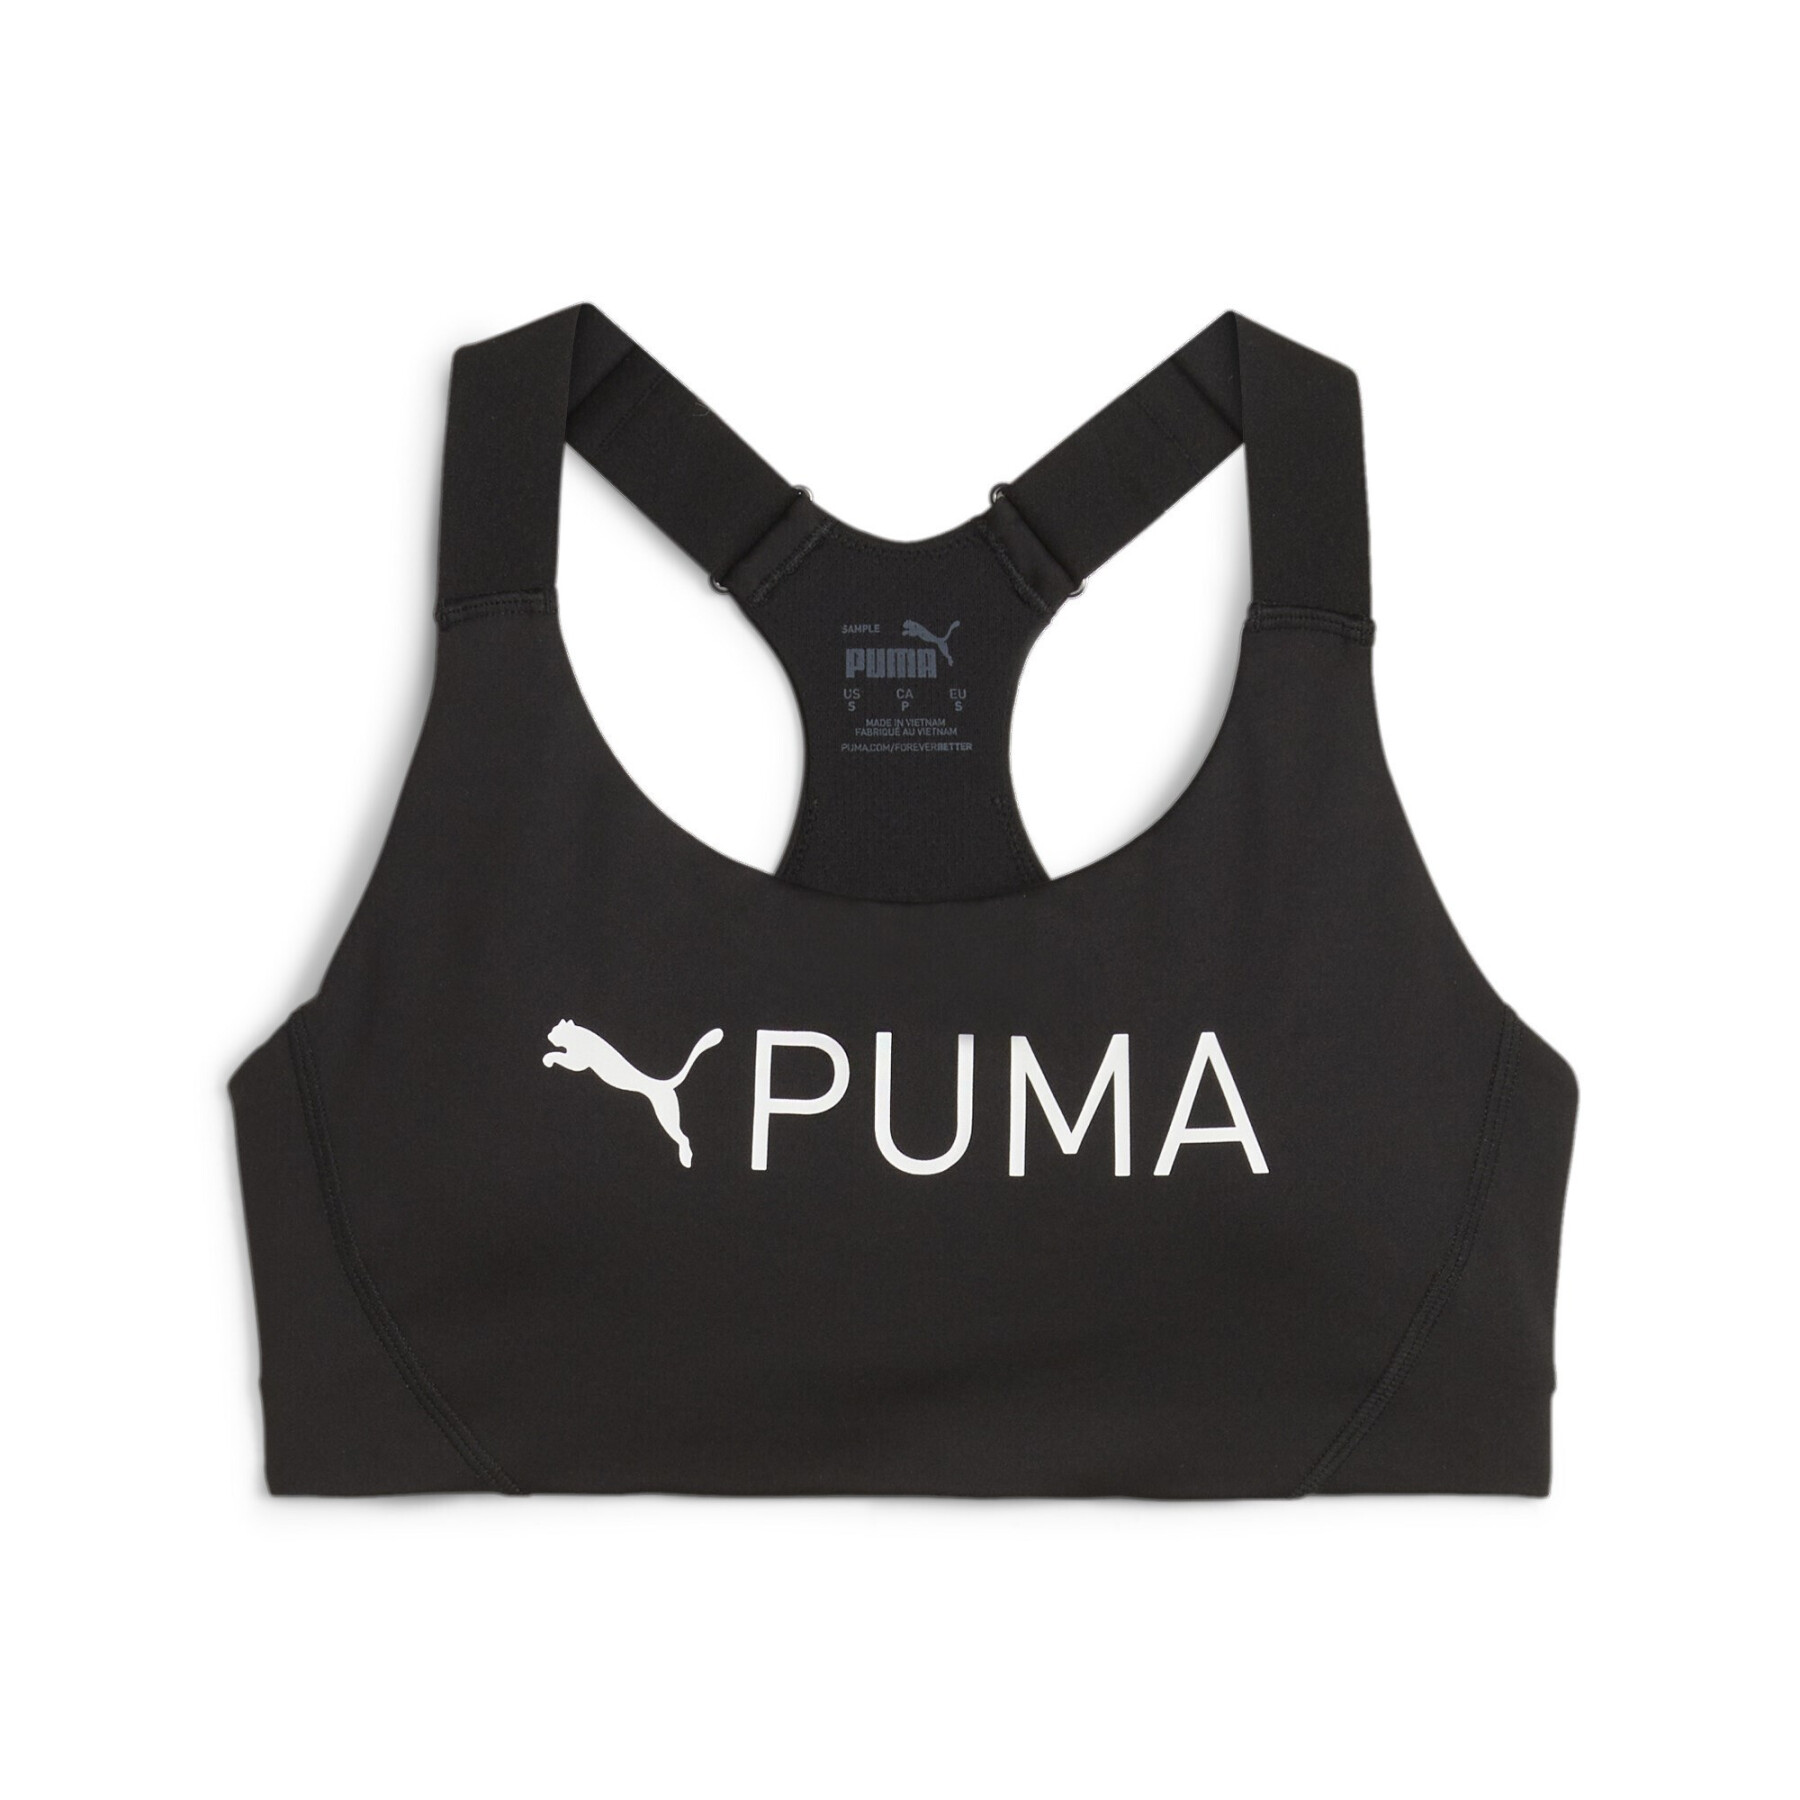 Women's bra Puma 4Keeps Eversculpt - Sports bras - Women's wear - Handball  wear